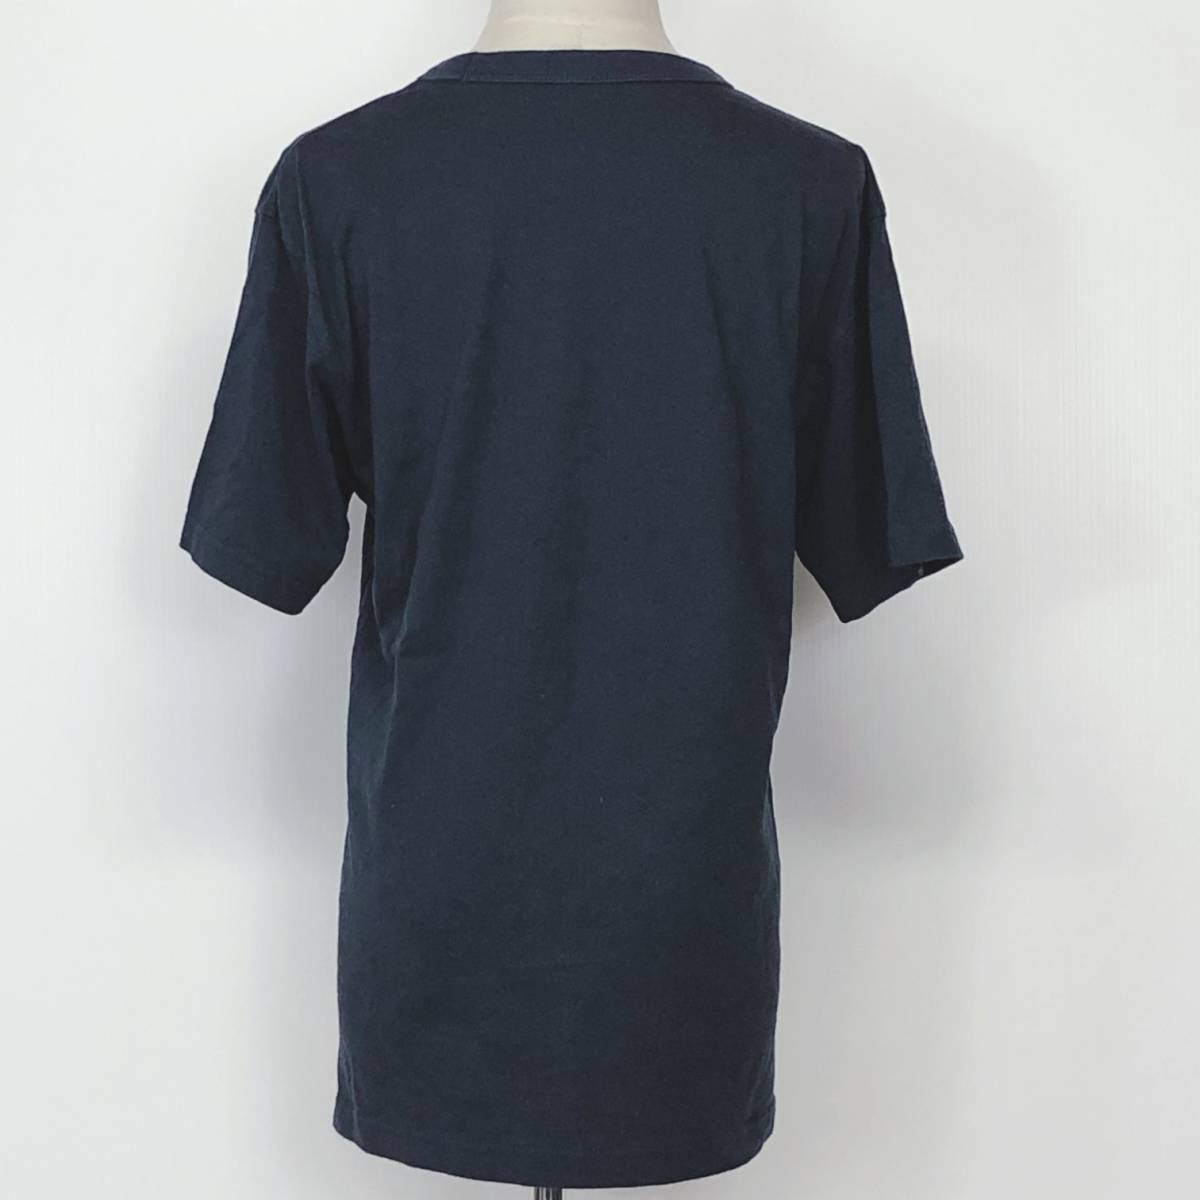 X432 UNIQLO（ユニクロ）レディース トップスTシャツ 半袖 厚手 Sサイズ ネイビー 紺 無地 綿100% シンプル 夏 スポーティチックスタイル_画像3